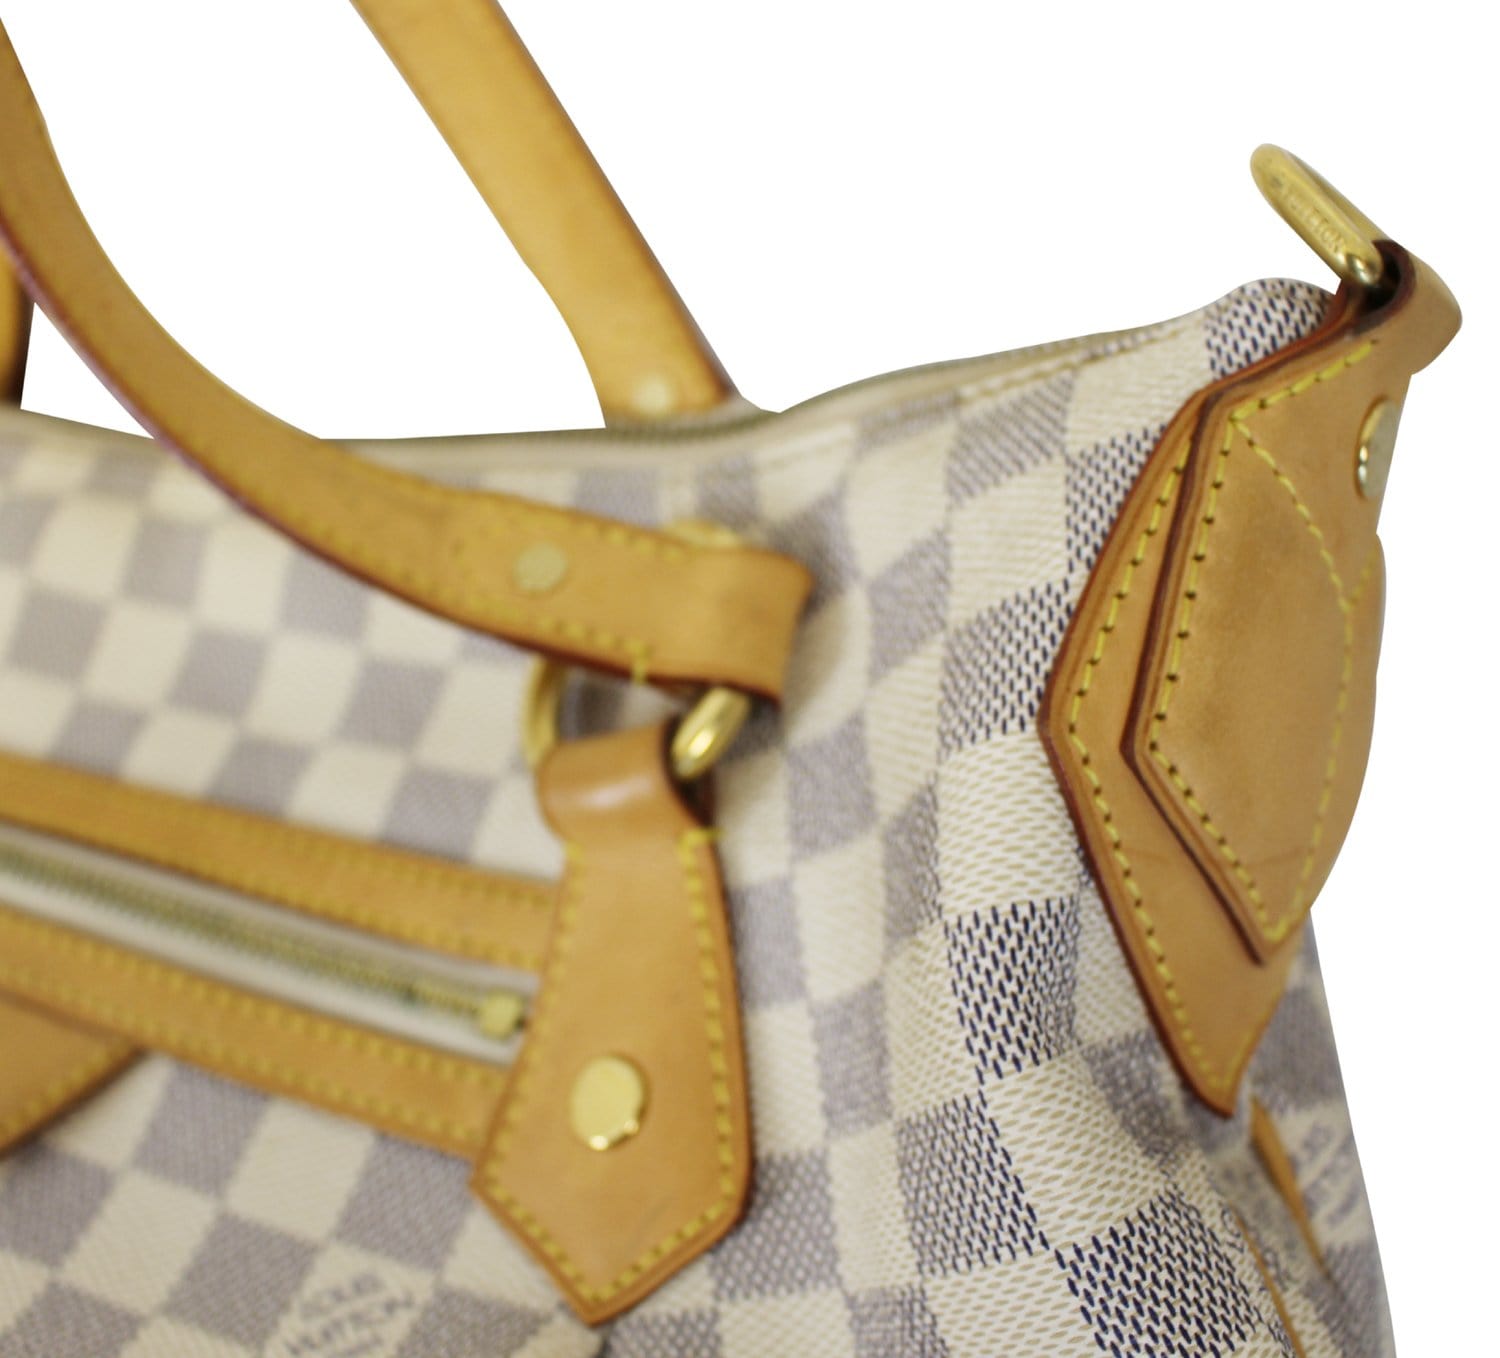 Authentic Louis Vuitton Evora Damier Azur hand/shoulder bag MM